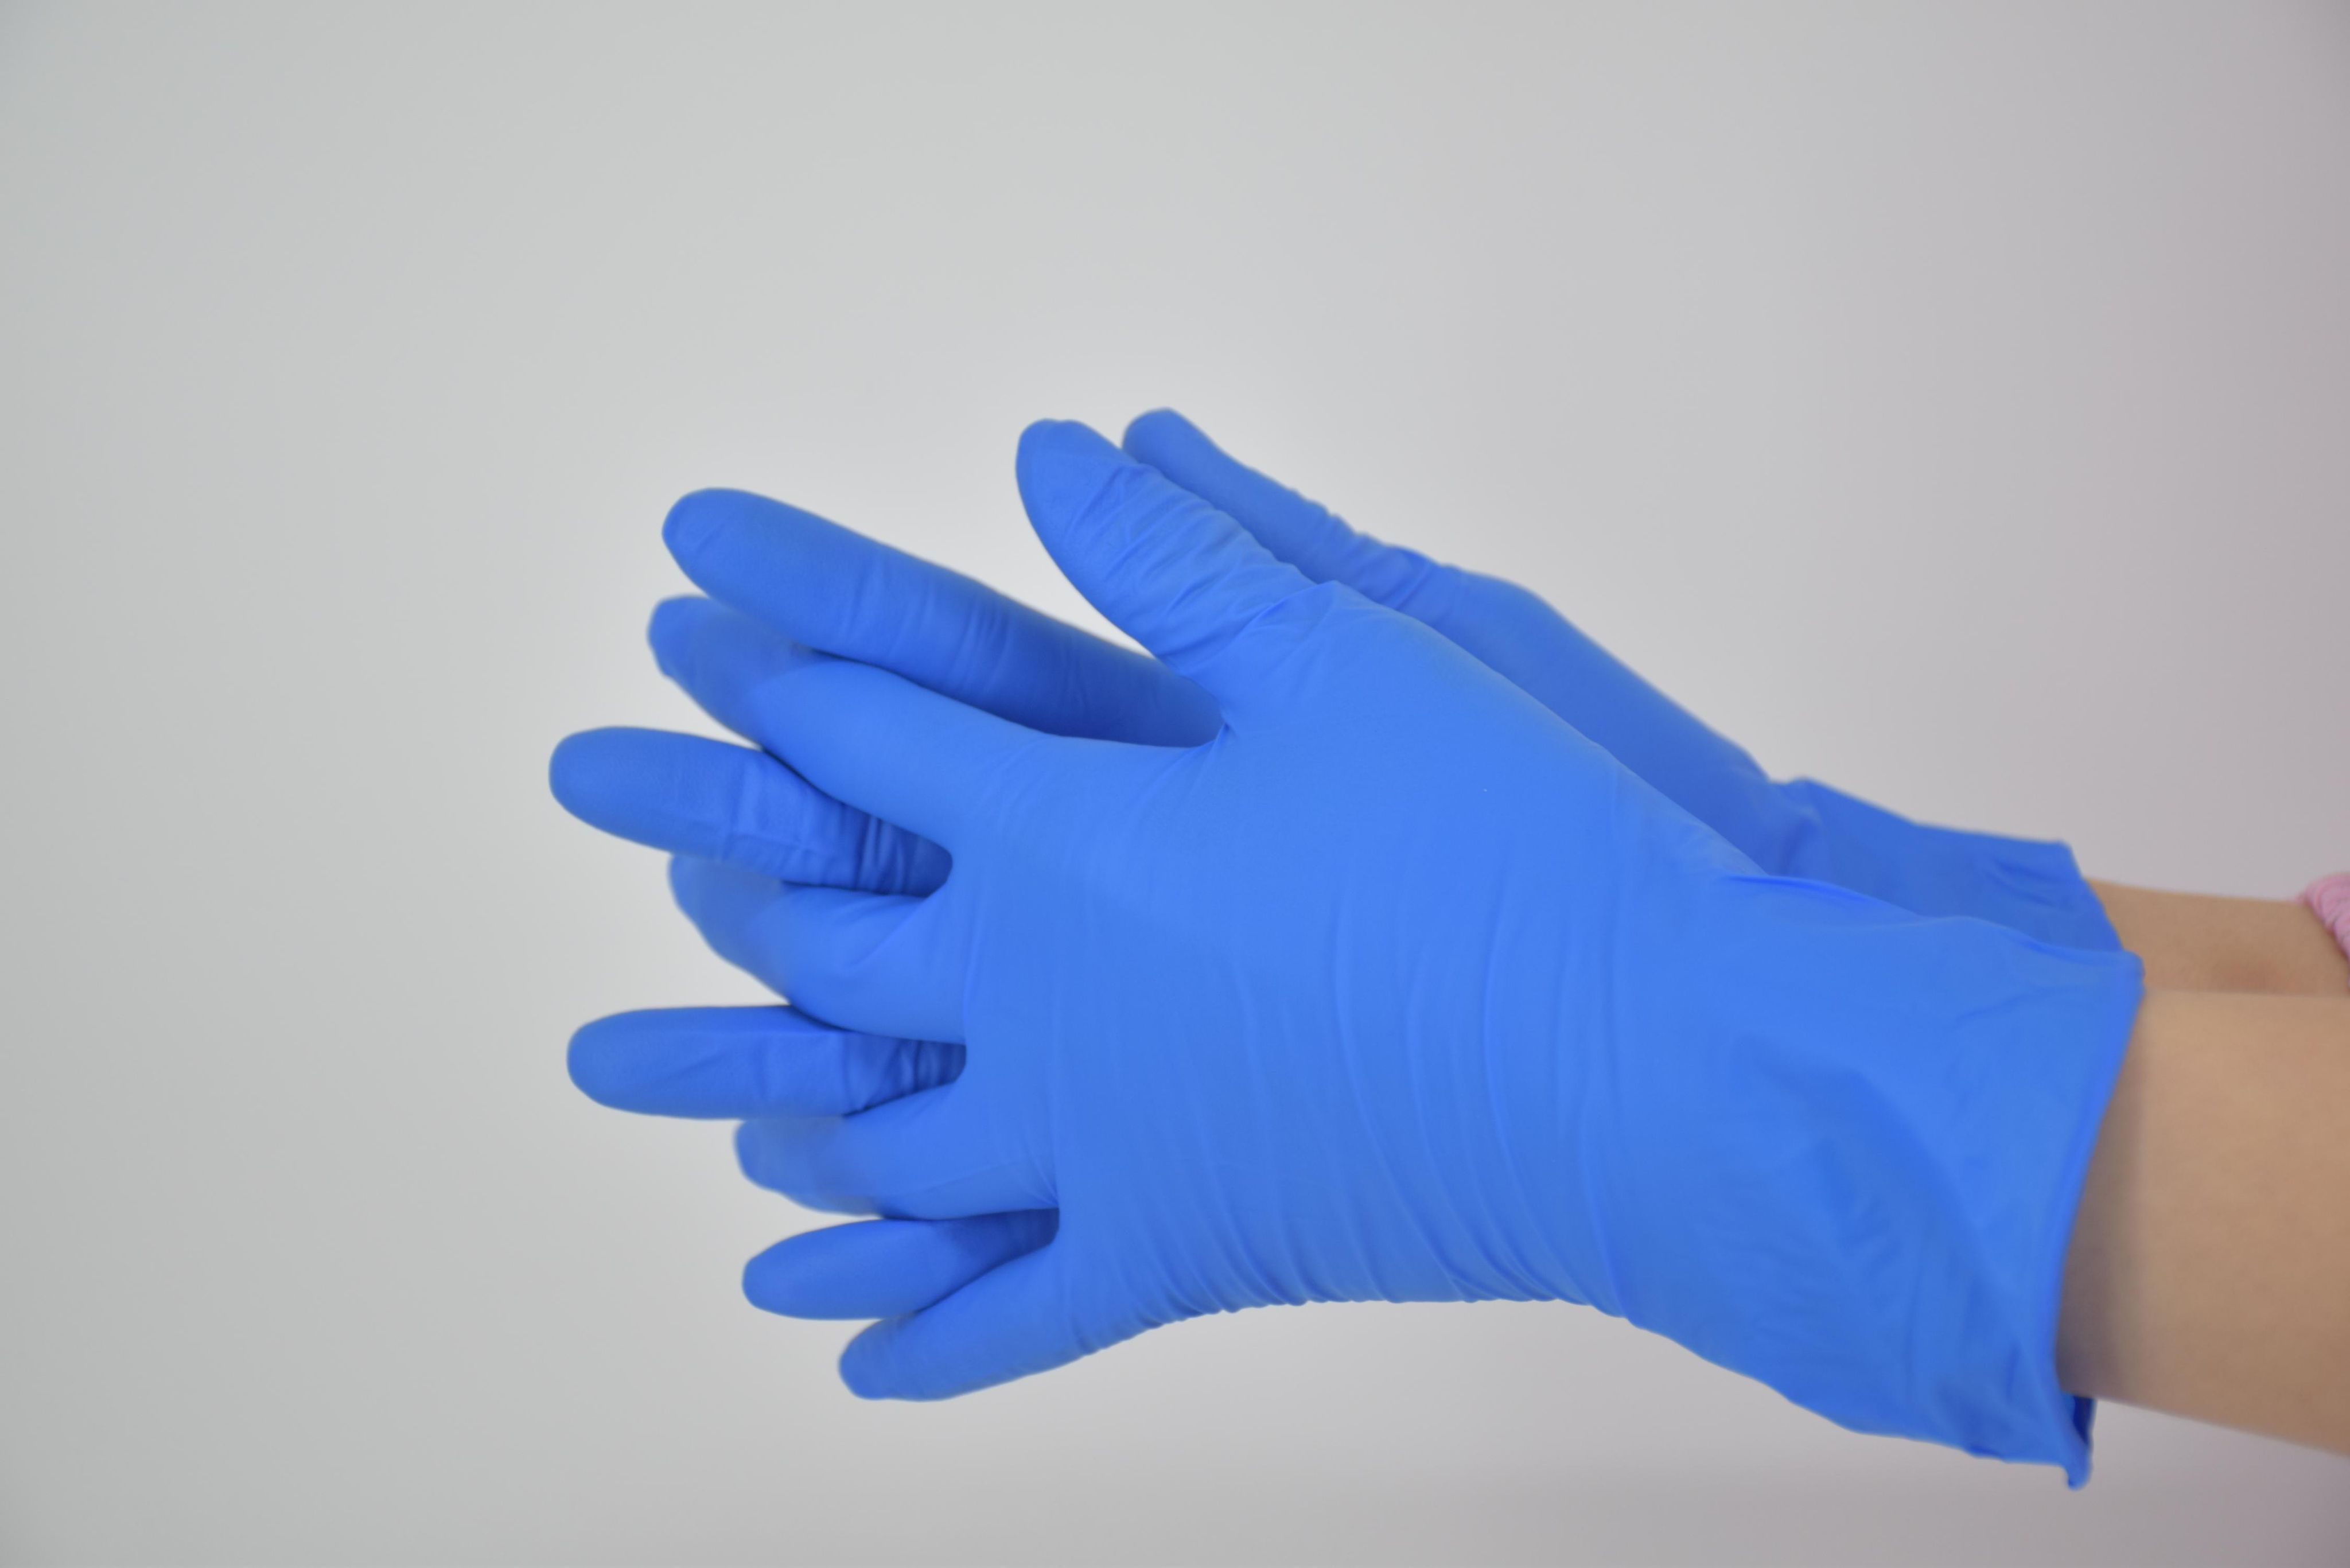 Перчатки резиновые зелёные Alphate 58-330 Ansell. Перчатки резиновые Mitra professional m. Перчатки резин (латекс) синие /50перч "l" повыш.плотности "хайриск2" (10). Длинные резиновые перчатки кислотостойкие la600. Резиновые перчатки после использования